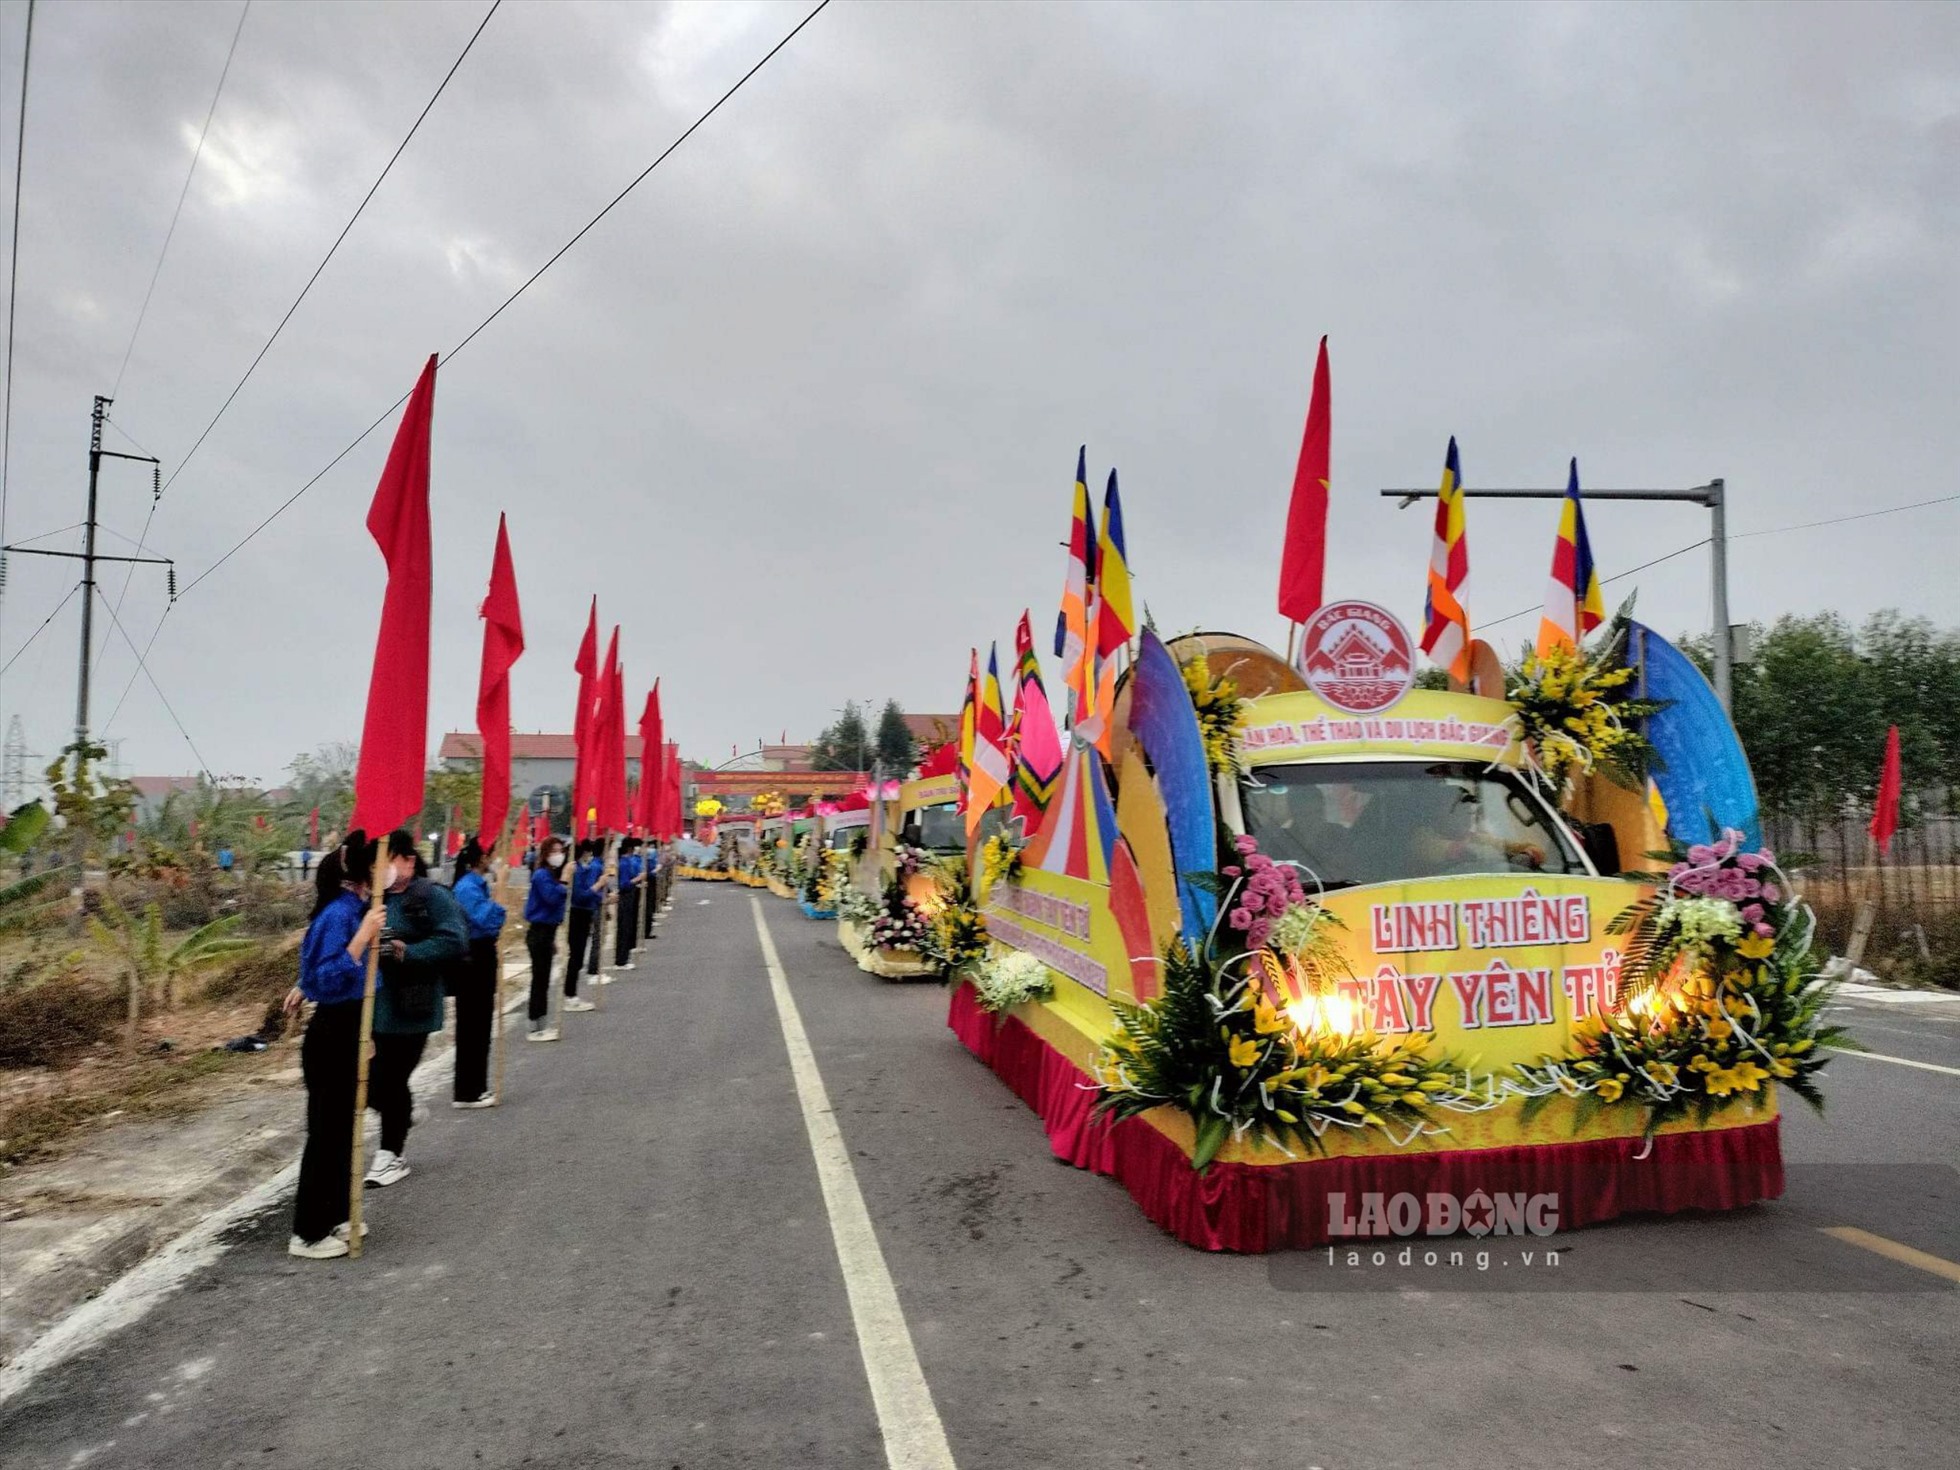 Đoàn rước gồm 108 xe ô tô được trang trí theo nghi thức Phật giáo, đã được Tổ chức Kỷ lục Việt Nam công nhận là Lễ rước theo nghi thức Phật giáo lớn nhất Việt Nam. Ảnh: Nguyễn Kế